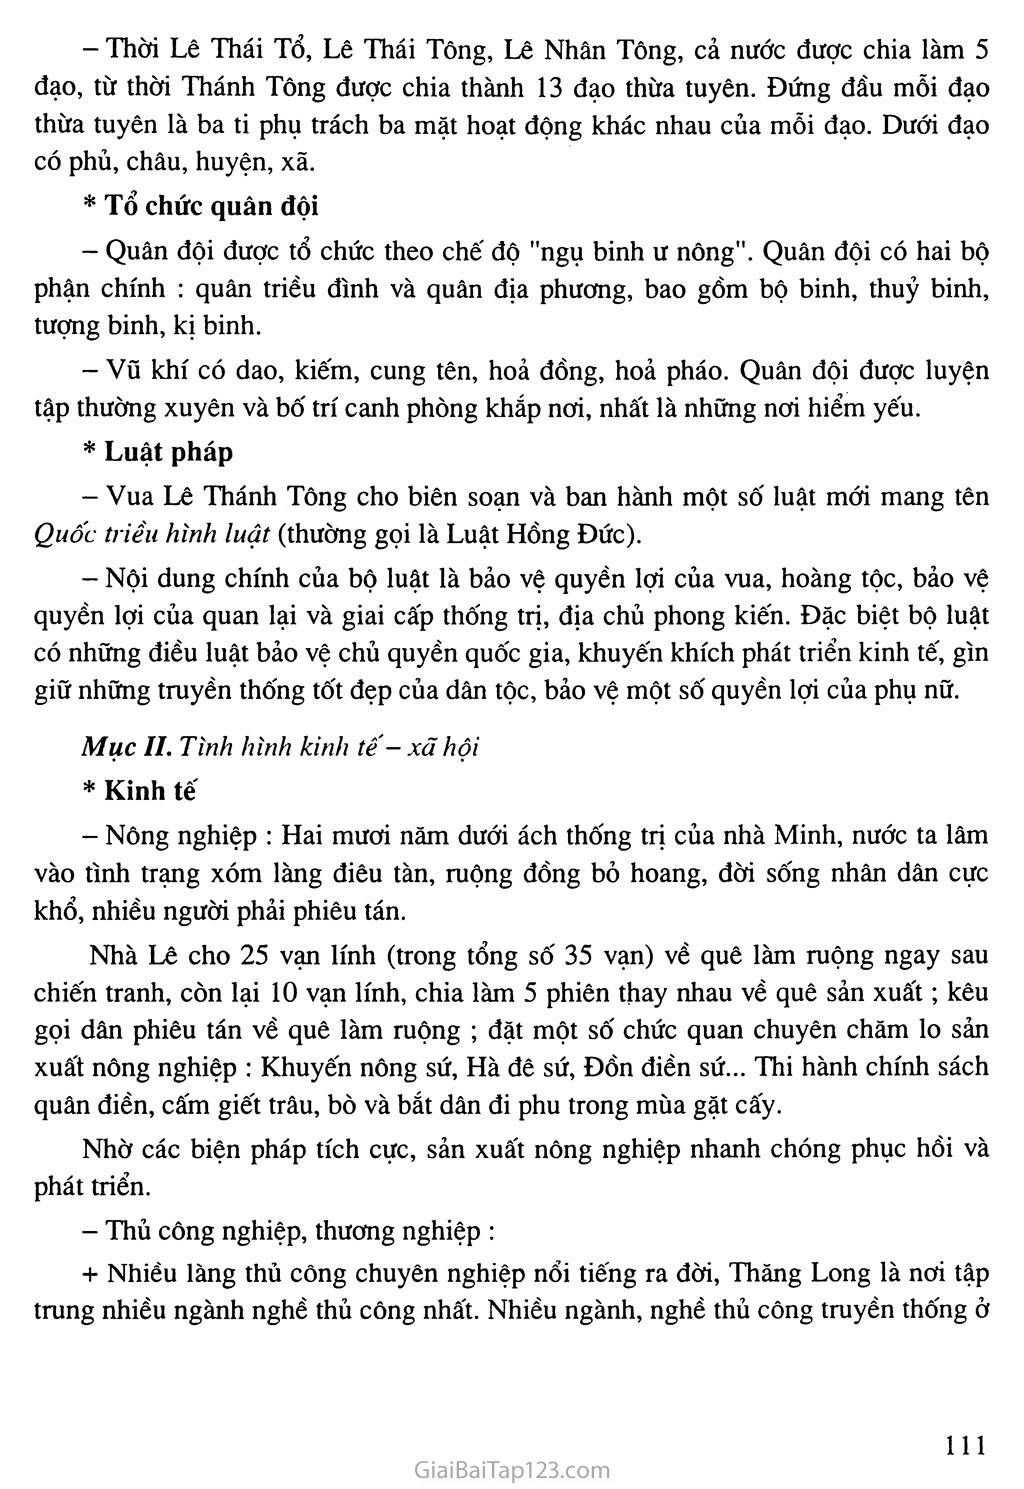 Bài 20: Nước Đại Việt thời Lê Sơ (1428 - 1527) trang 2